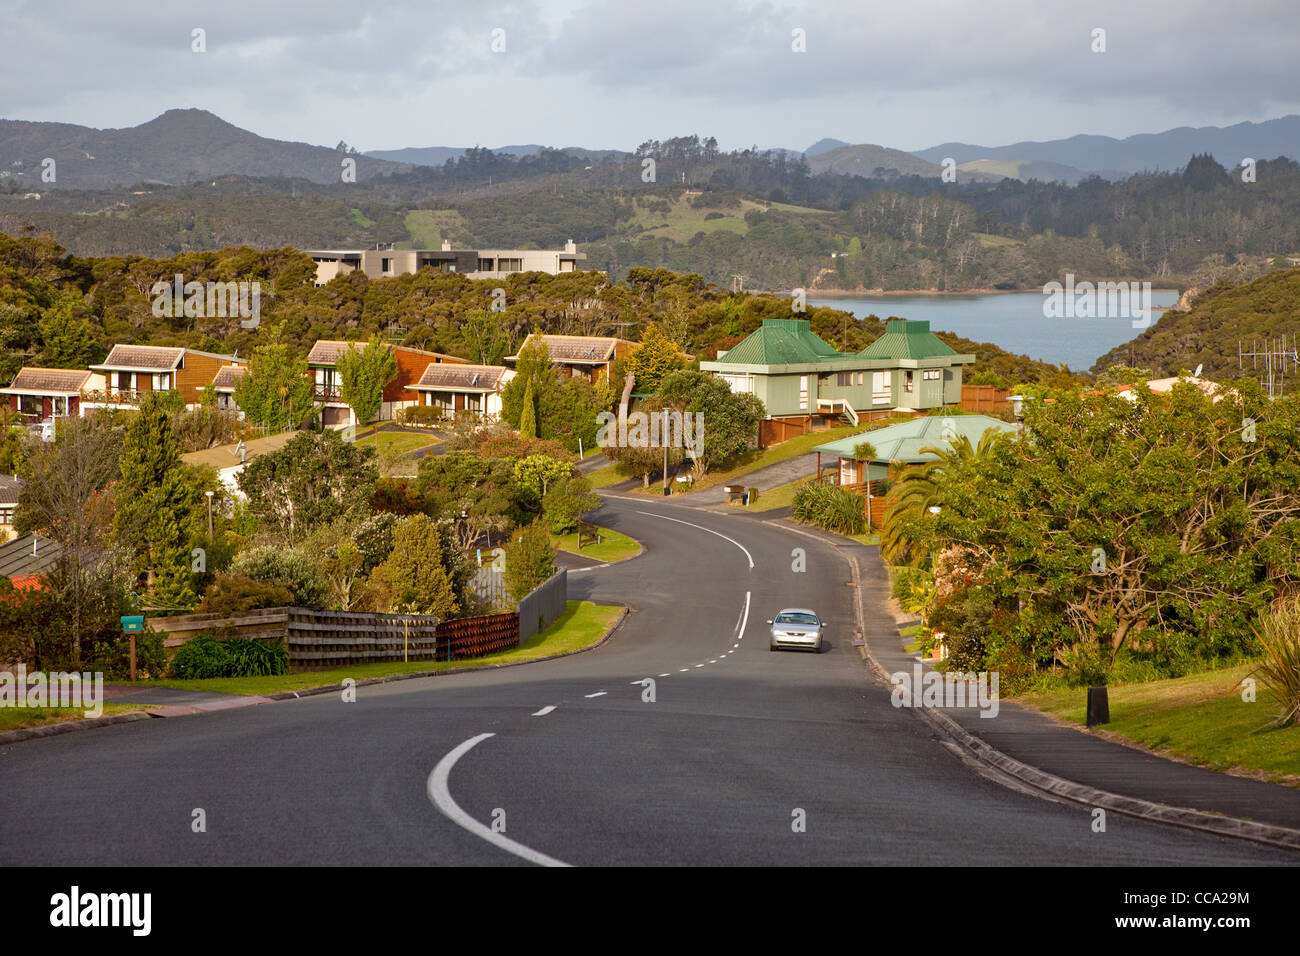 Paihia, New Zealand. Residential Suburb. Stock Photo